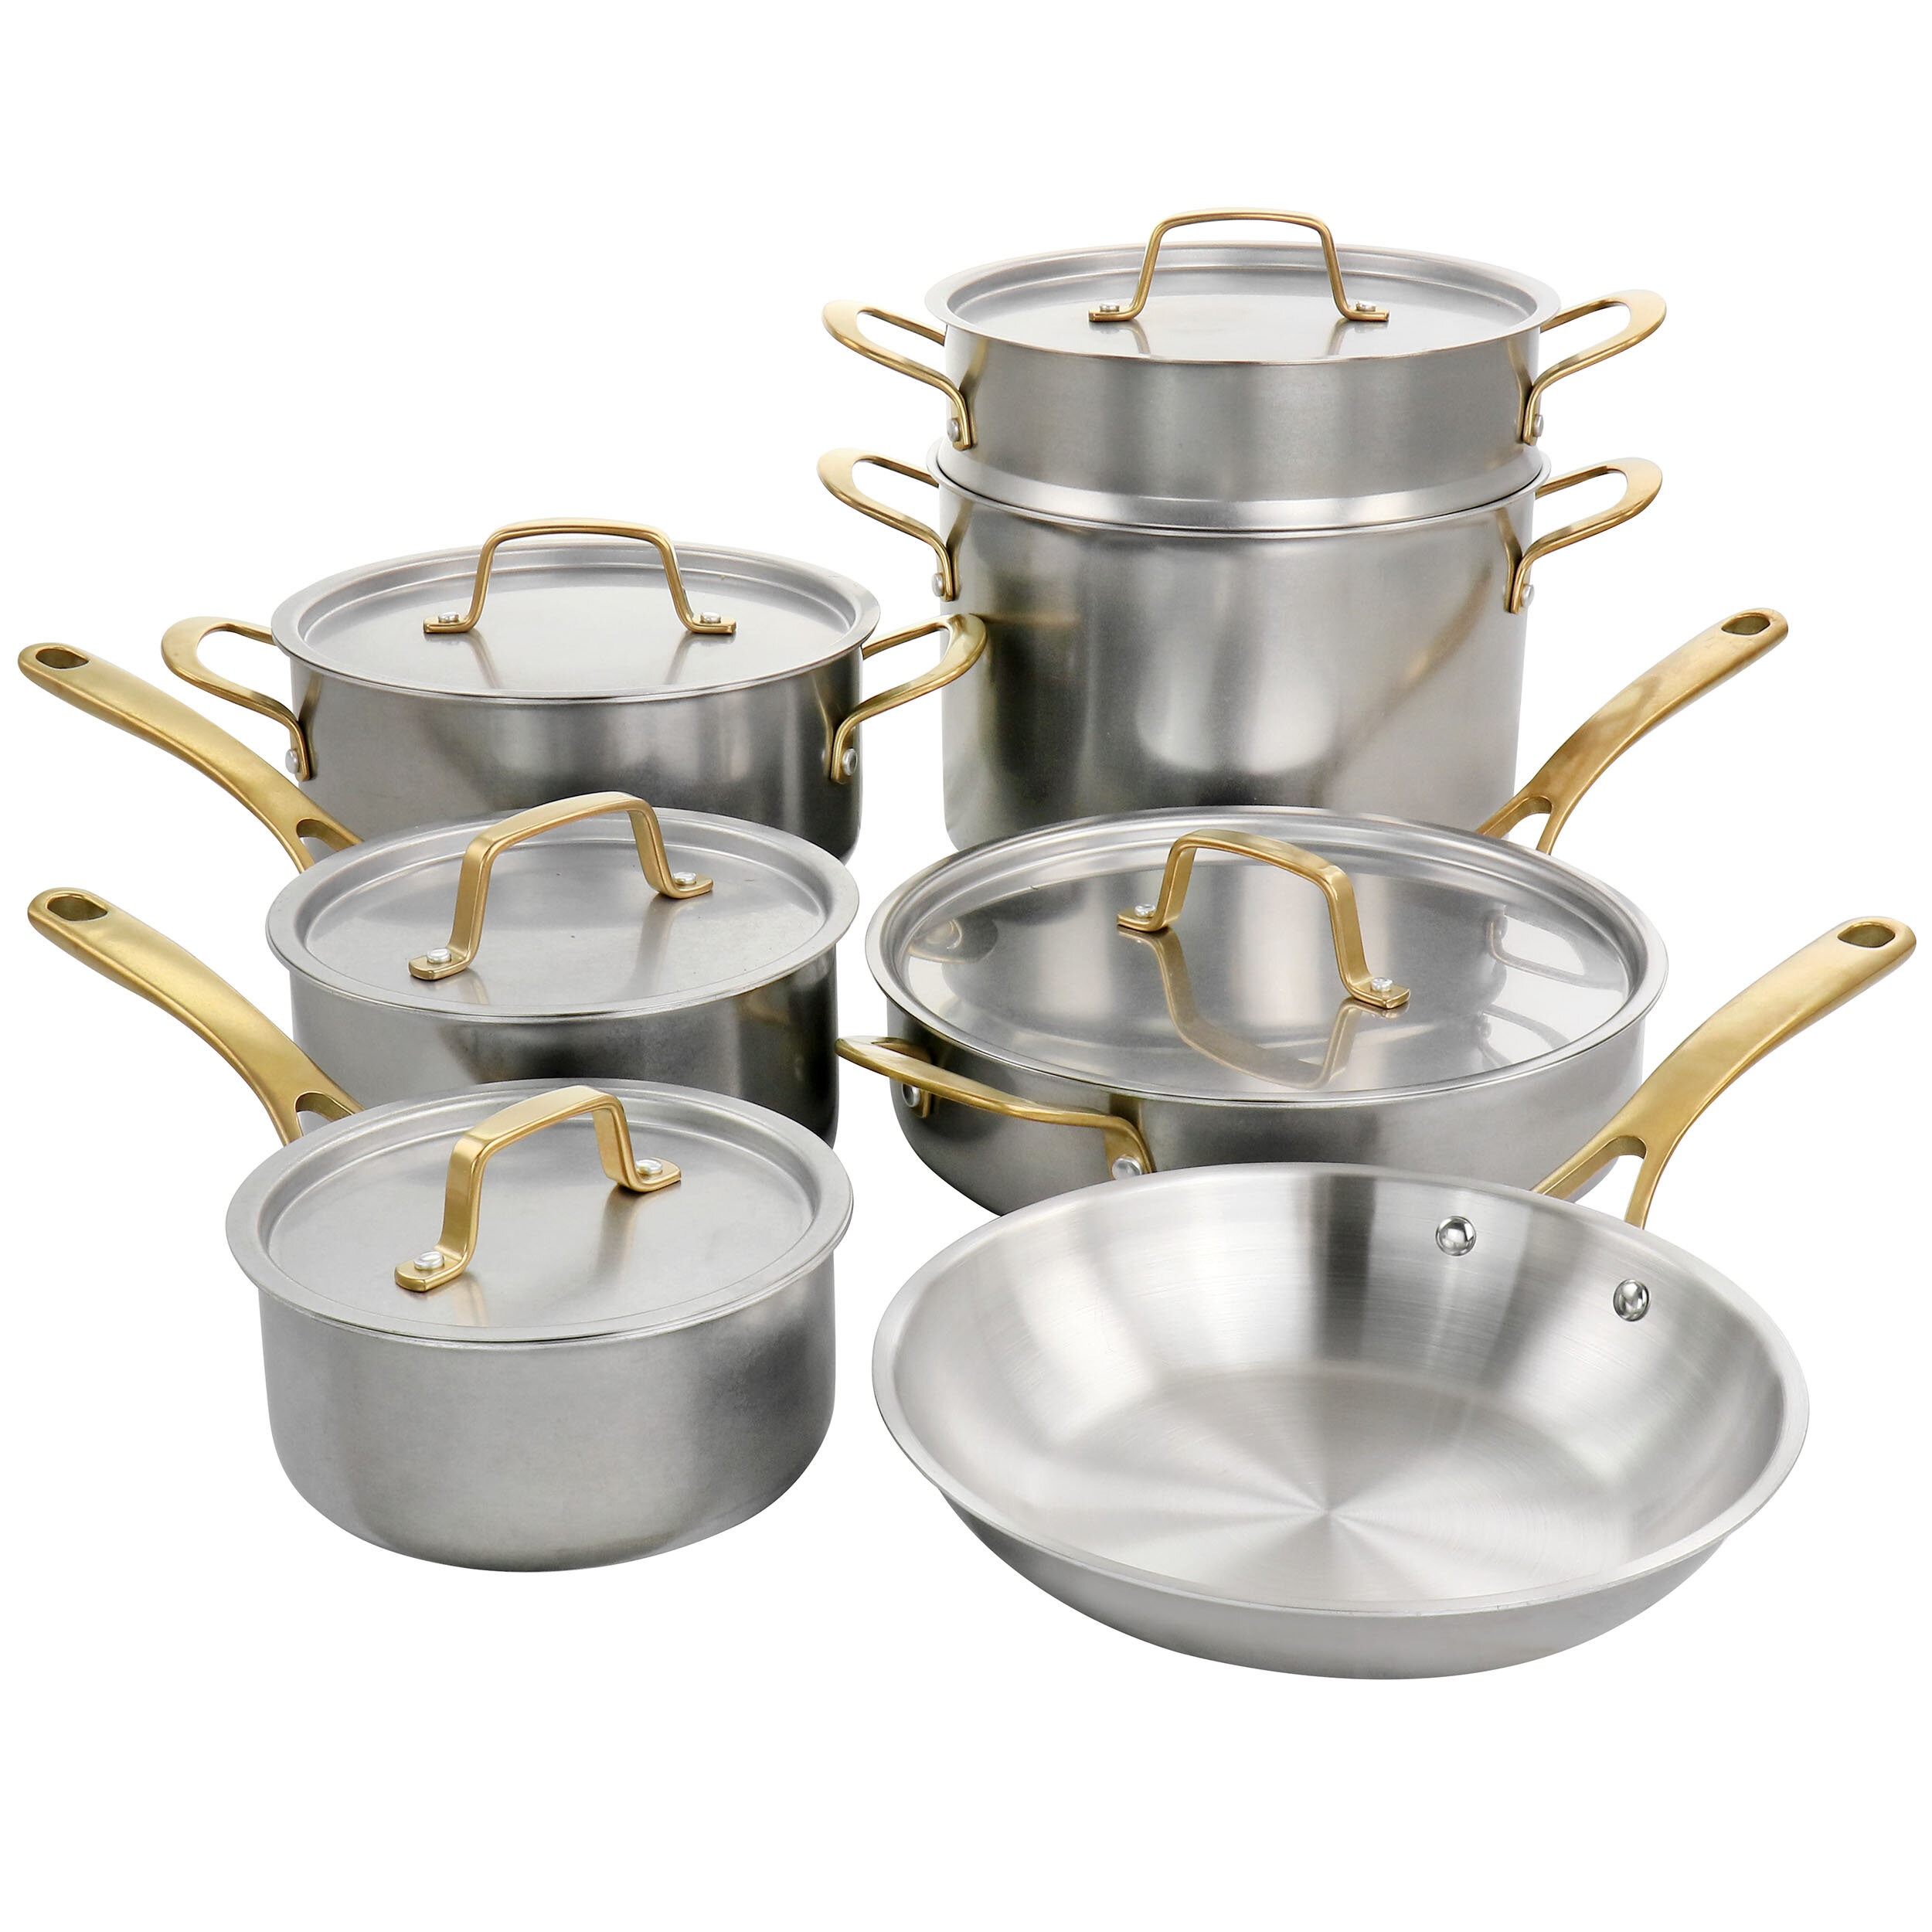 https://assets.wfcdn.com/im/79758607/compr-r85/1846/184661720/martha-stewart-12-pieces-stainless-steel-cookware-set.jpg